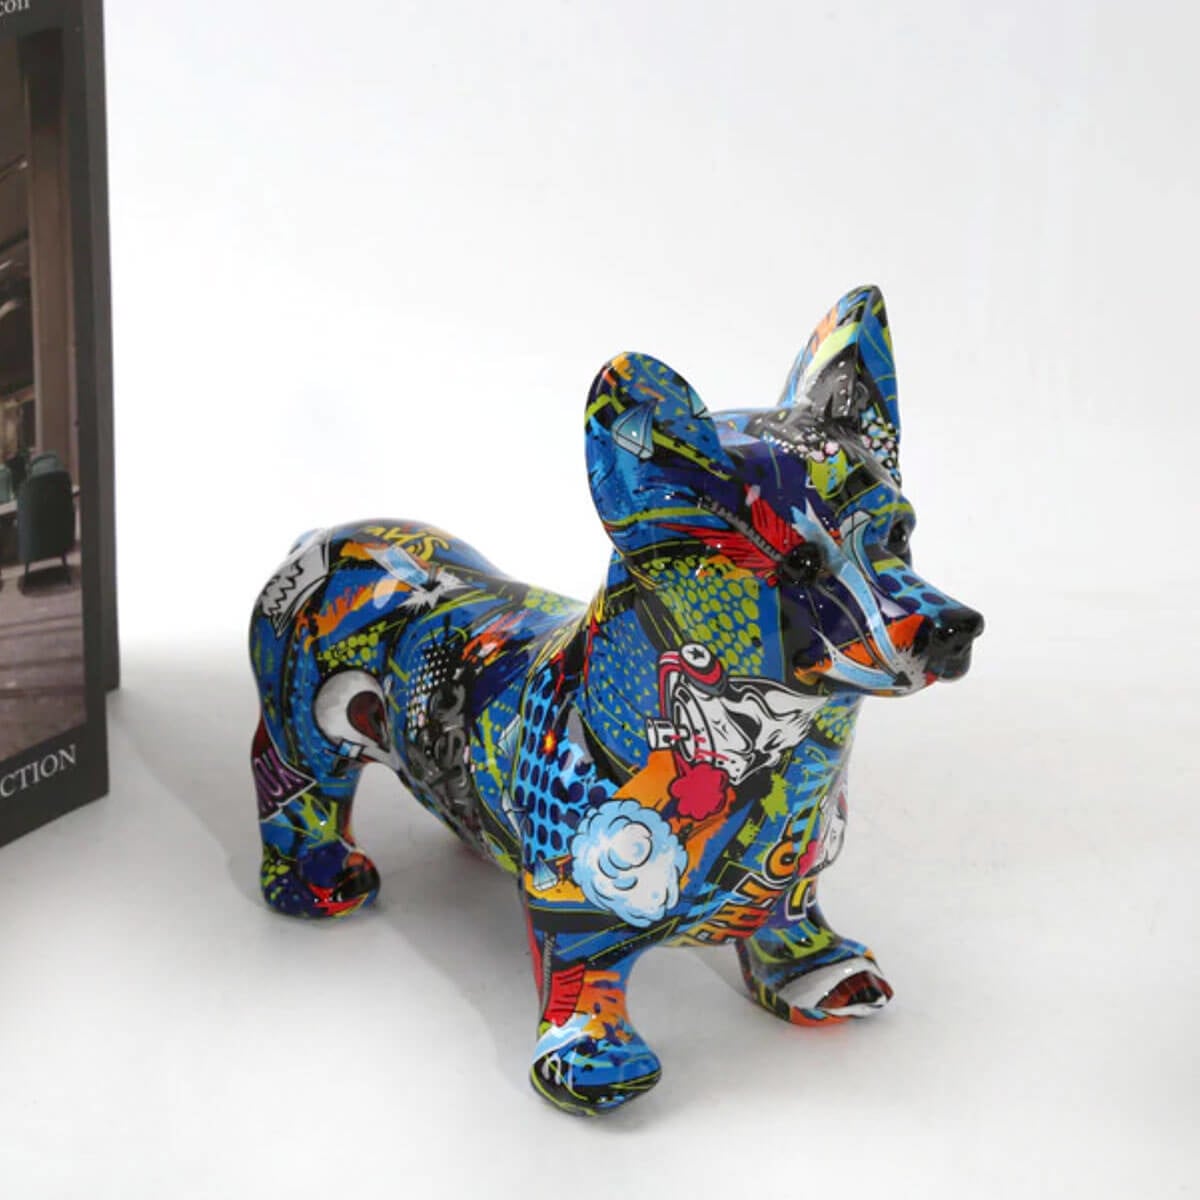 Statuie Câine Corgi Sculptură Artă Graffiti Colorată